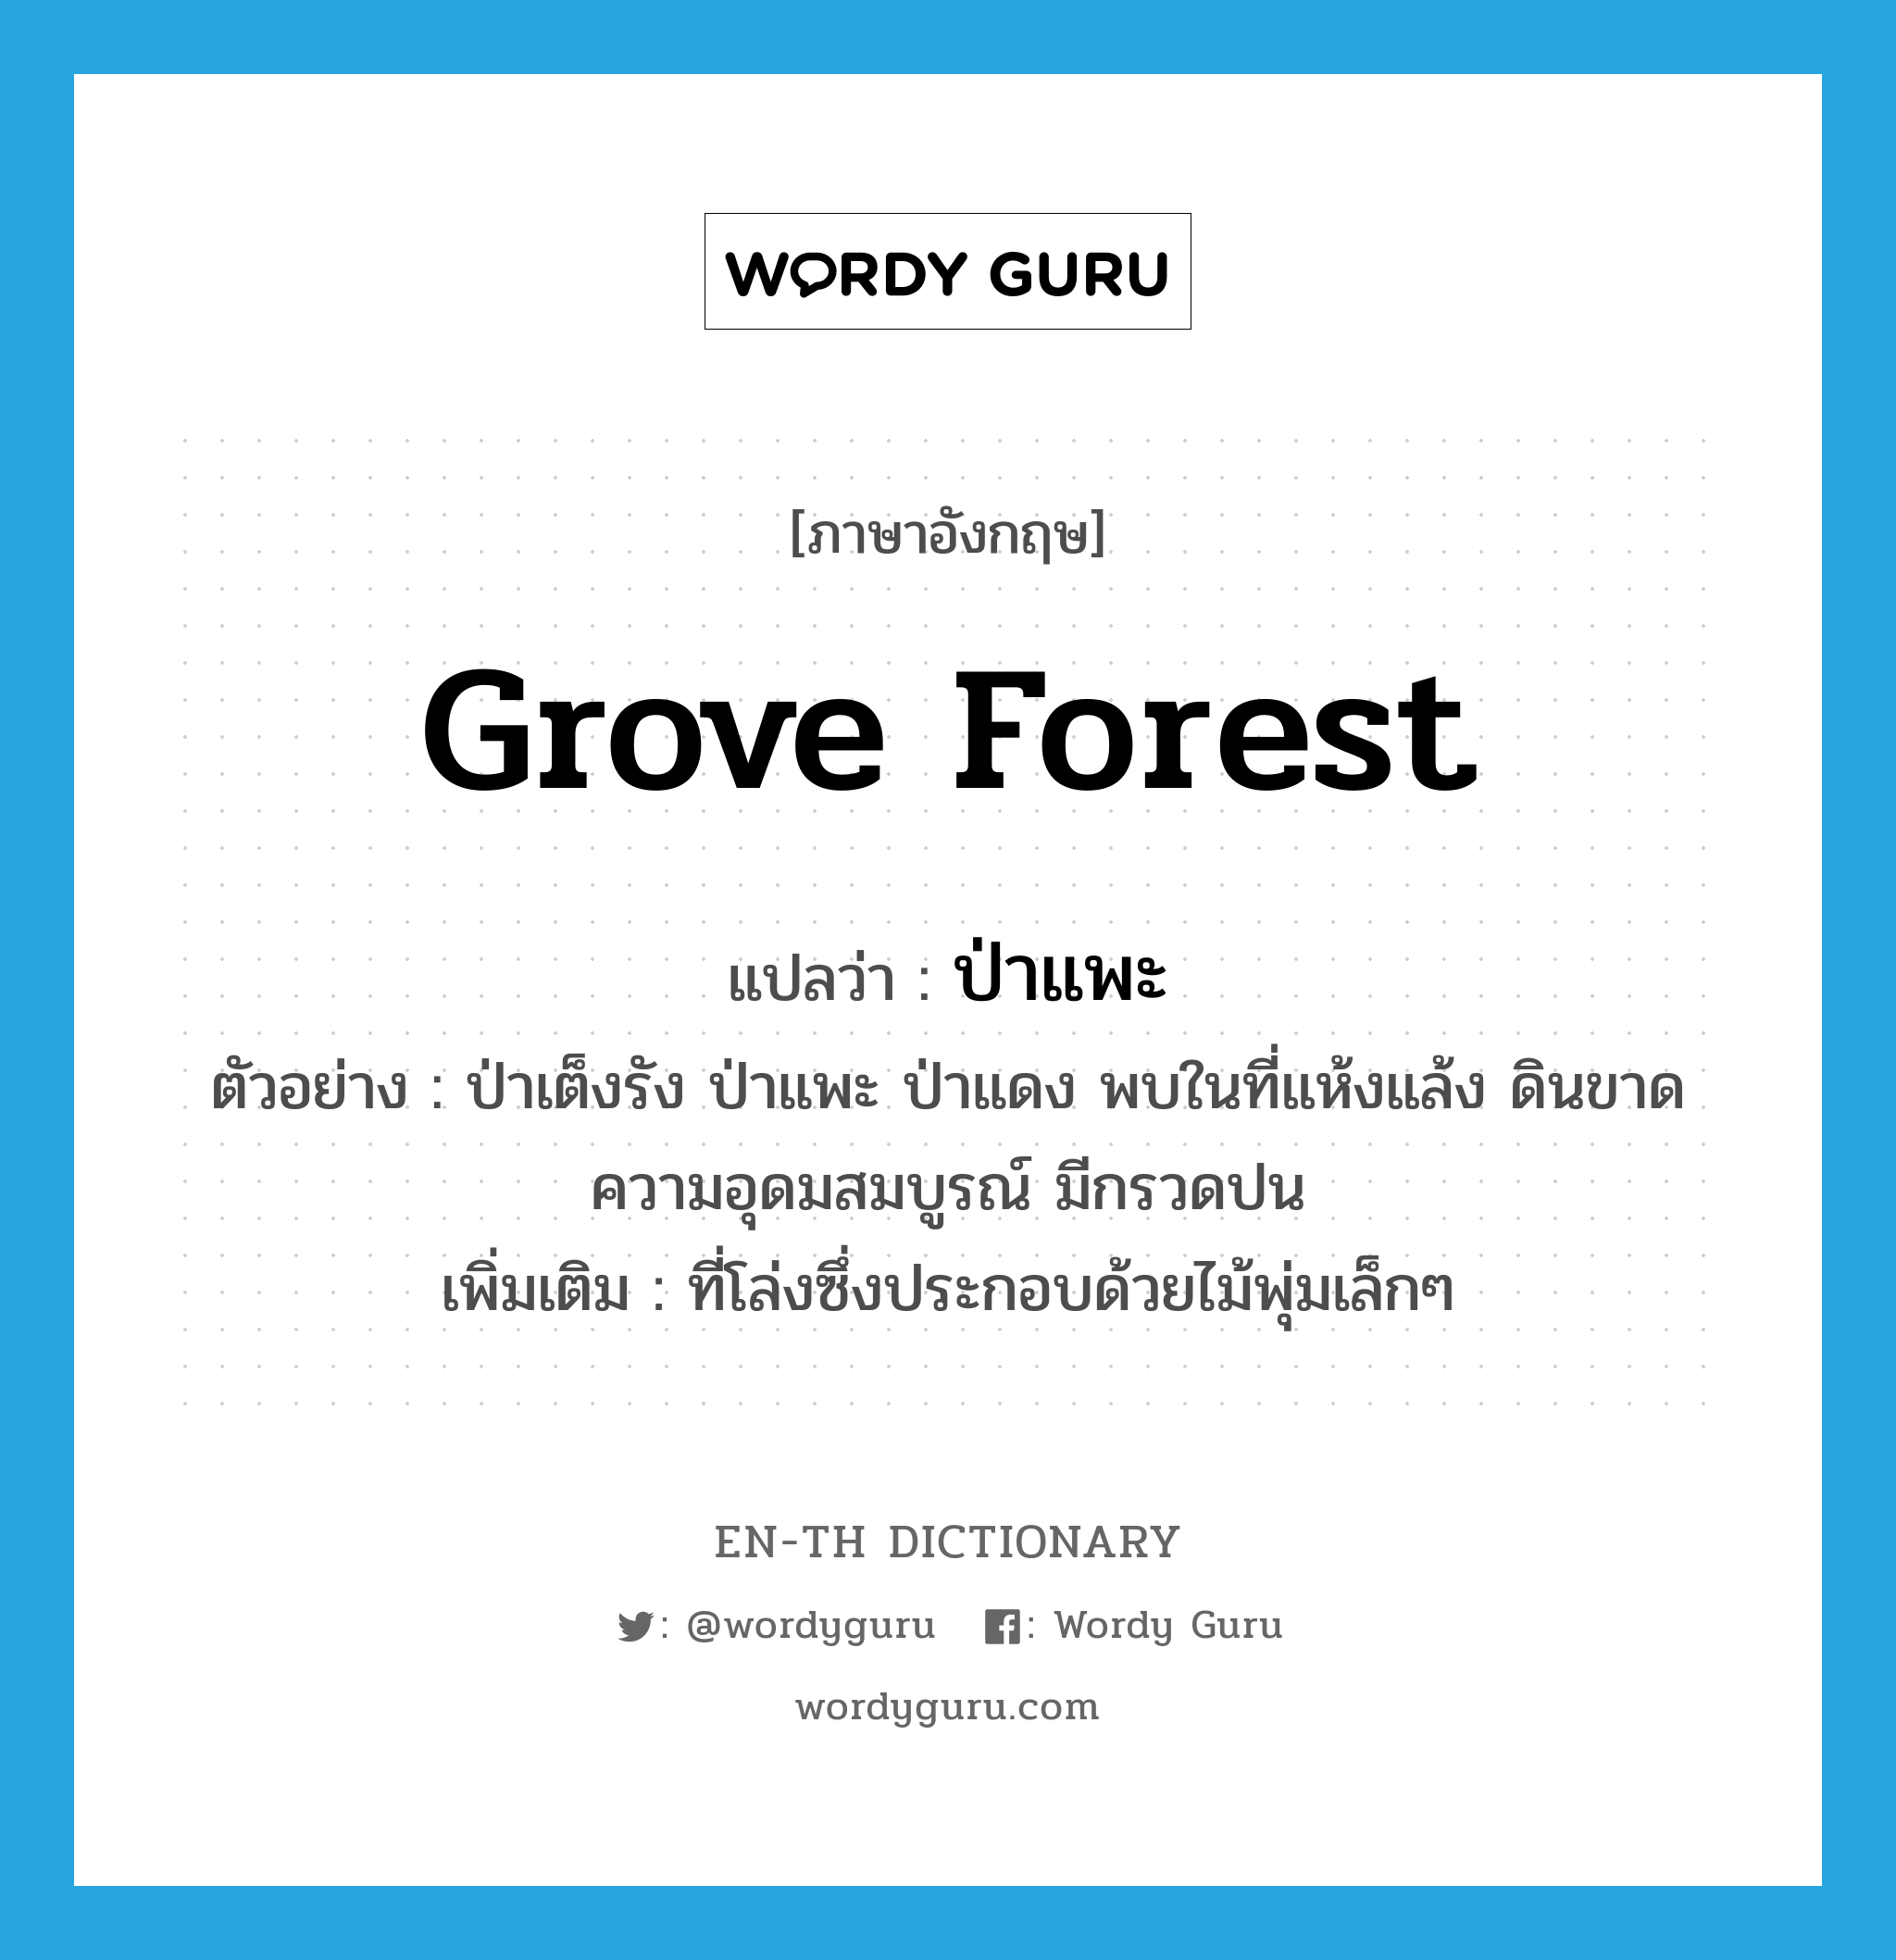 grove forest แปลว่า?, คำศัพท์ภาษาอังกฤษ grove forest แปลว่า ป่าแพะ ประเภท N ตัวอย่าง ป่าเต็งรัง ป่าแพะ ป่าแดง พบในที่แห้งแล้ง ดินขาดความอุดมสมบูรณ์ มีกรวดปน เพิ่มเติม ที่โล่งซึ่งประกอบด้วยไม้พุ่มเล็กๆ หมวด N